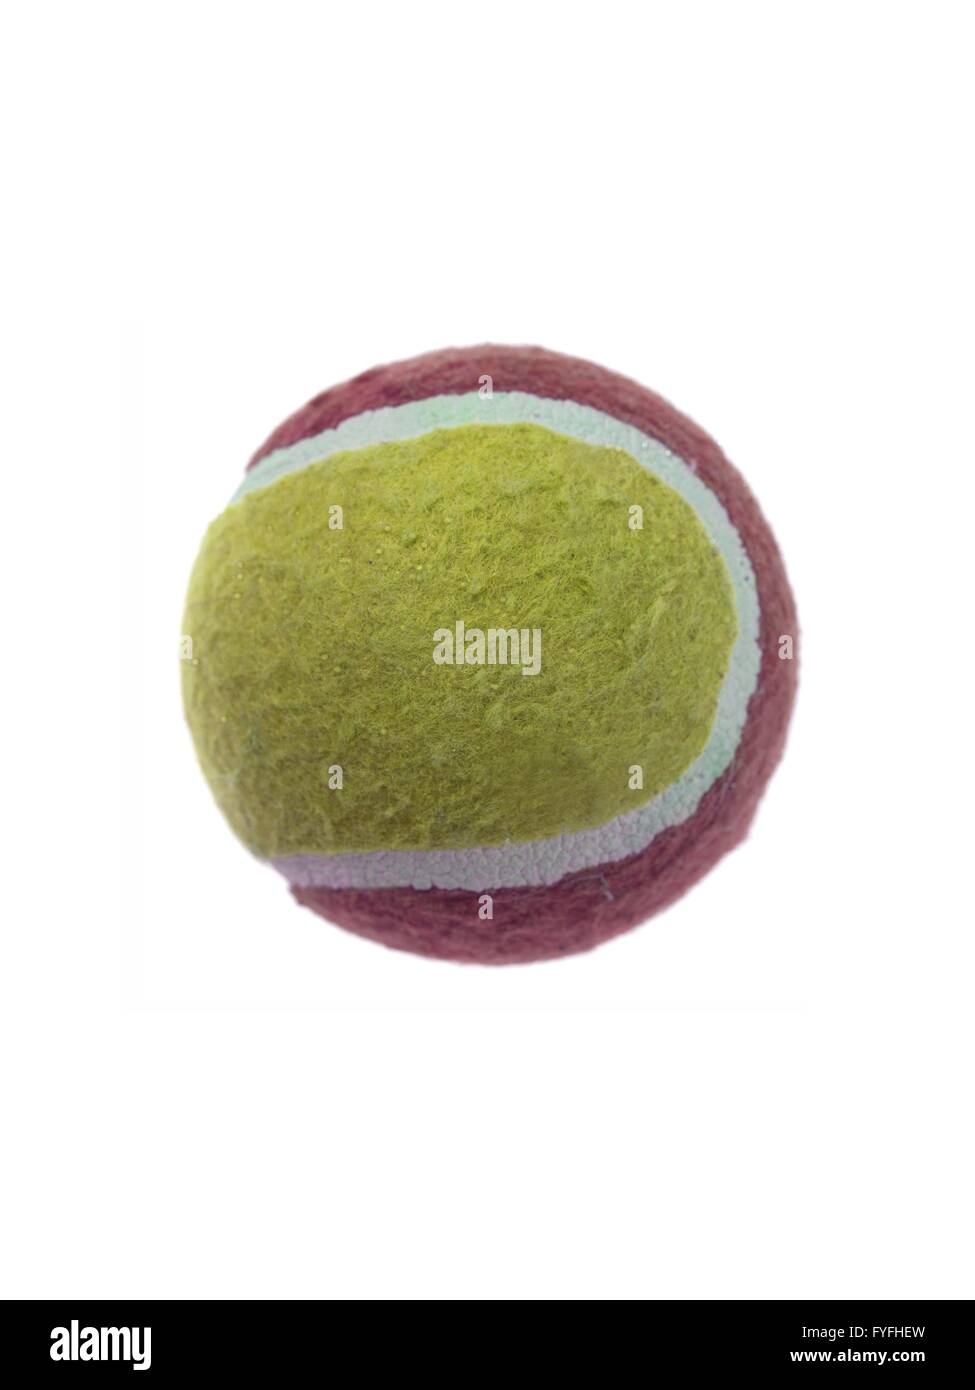 Balles de tennis sport sur gazon vert artificiel Banque D'Images